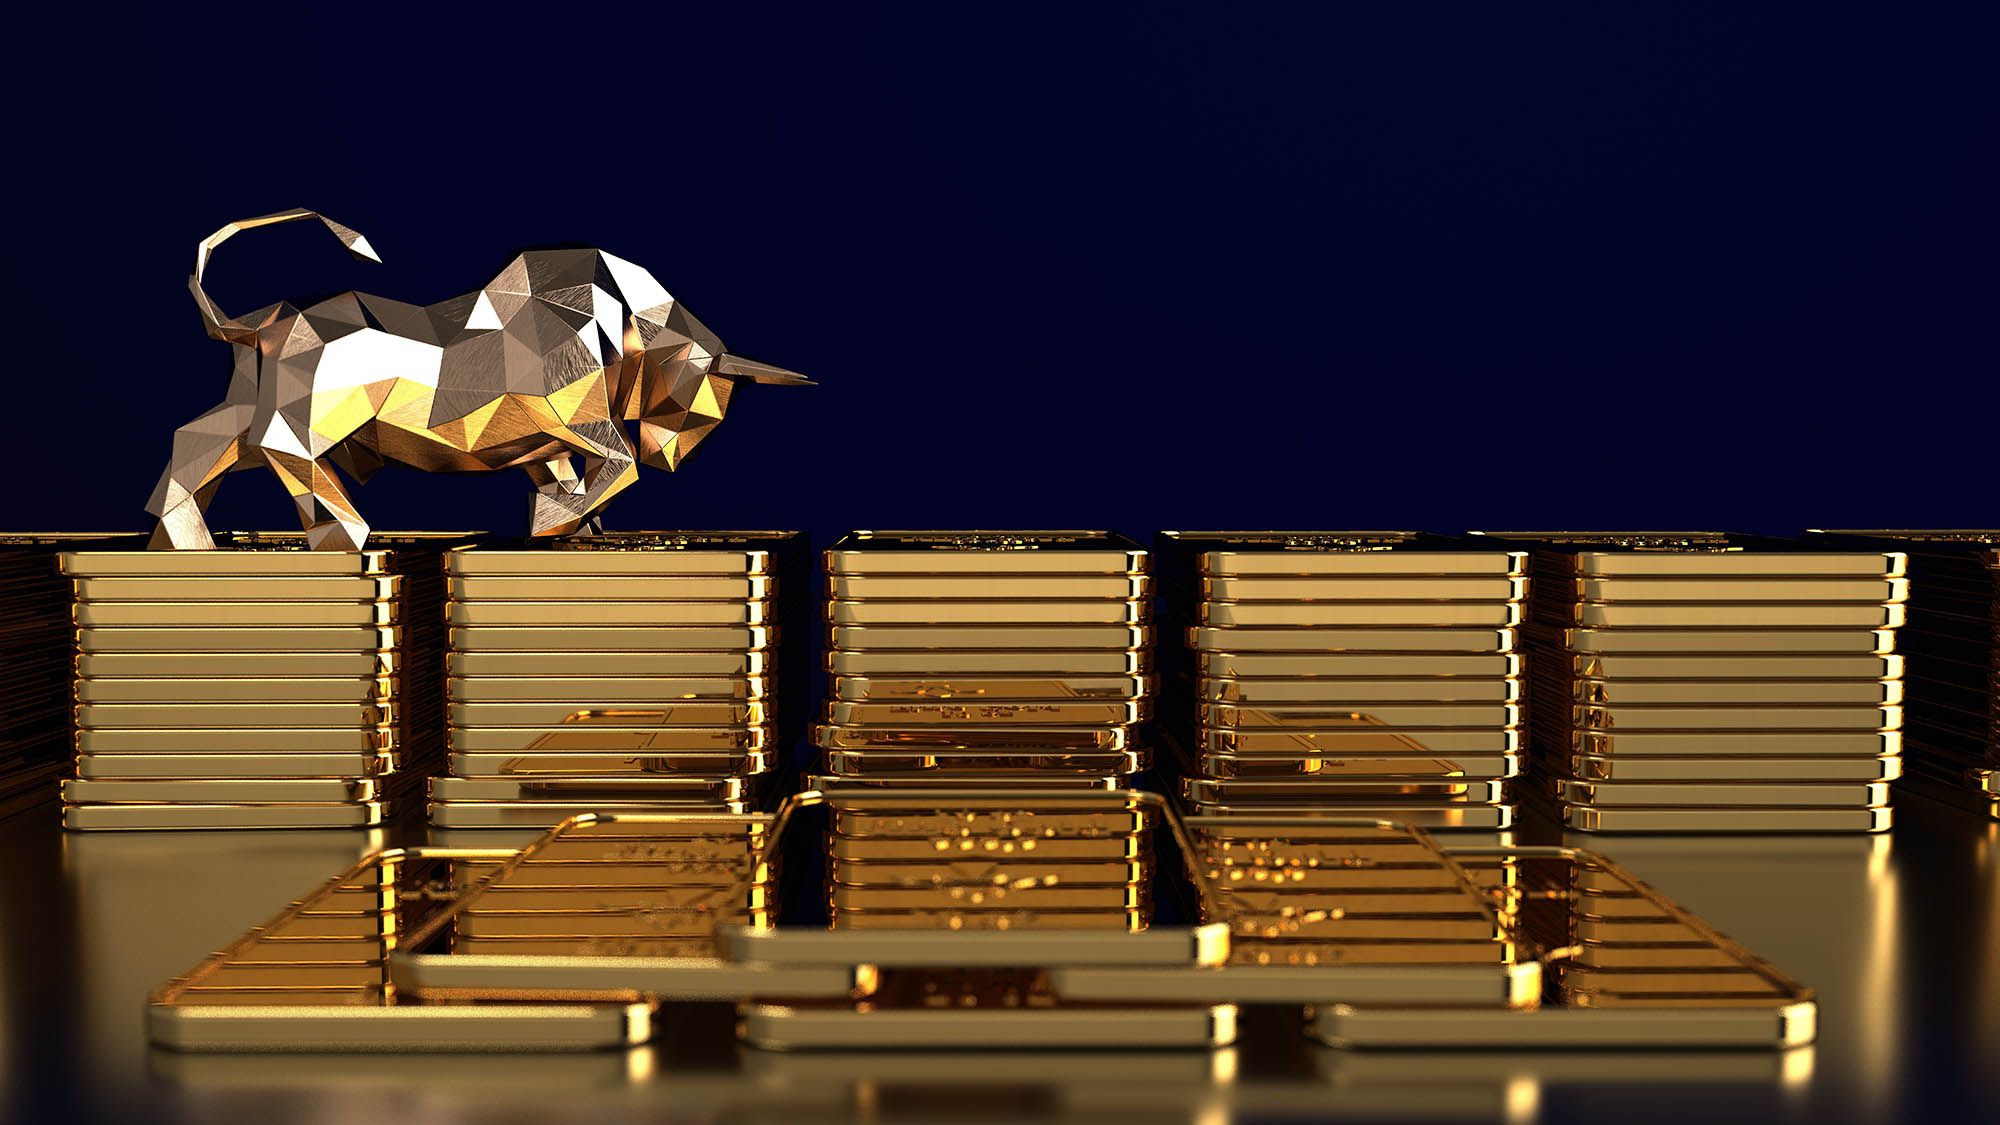 https://www.poundsterlinglive.com/images/stock/gold-price-forecast-bullish-concept.jpg